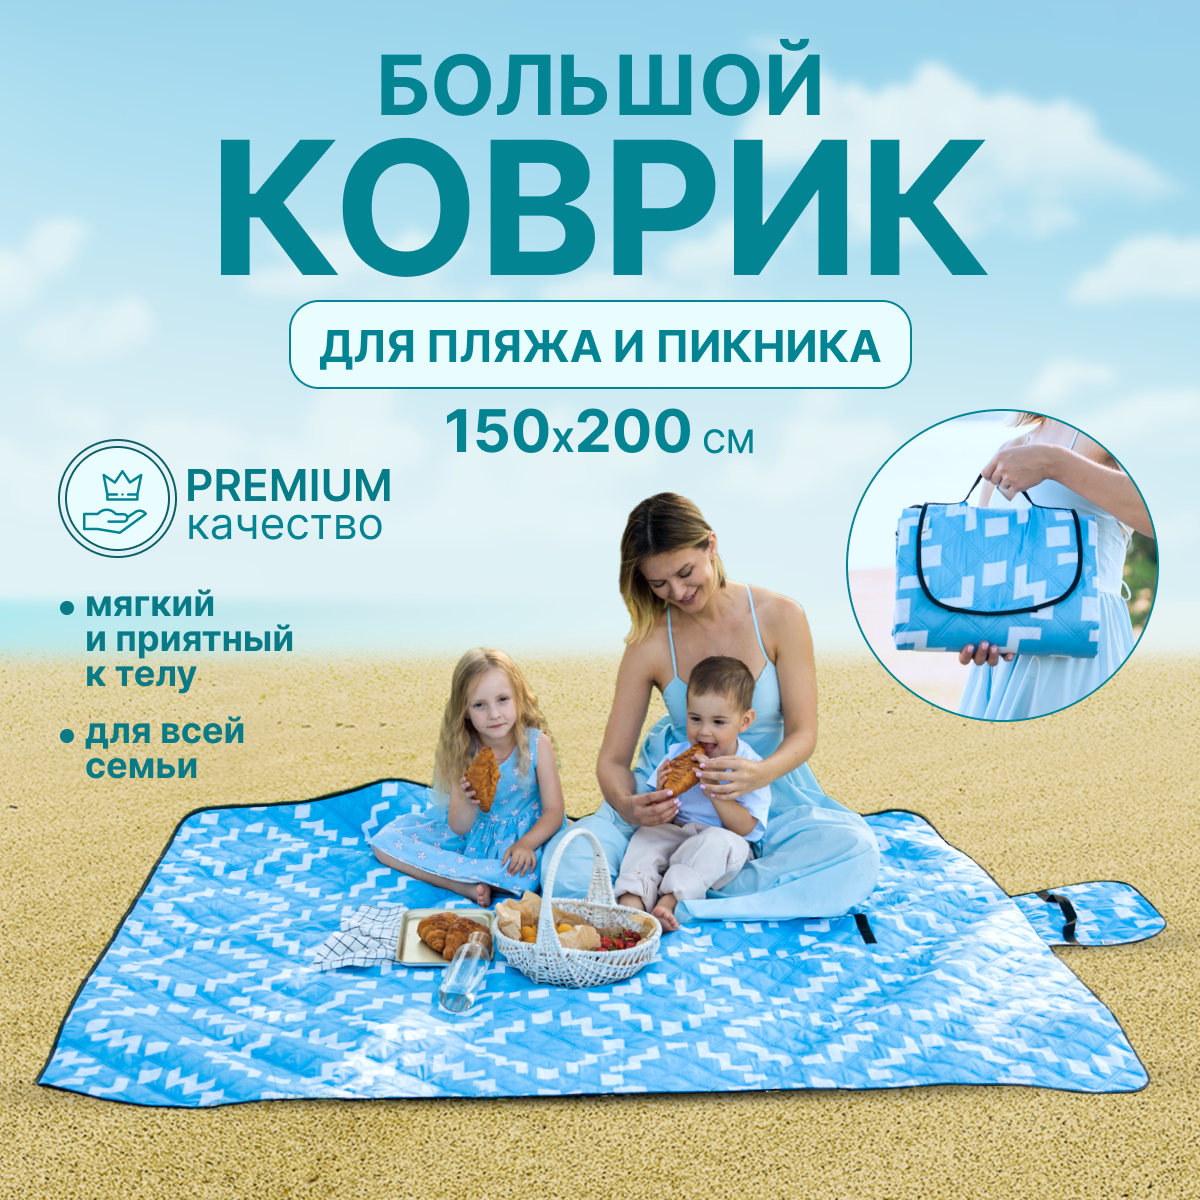 Коврик пляжный 200*150 см., коврик сумка, для пикника, для туризма